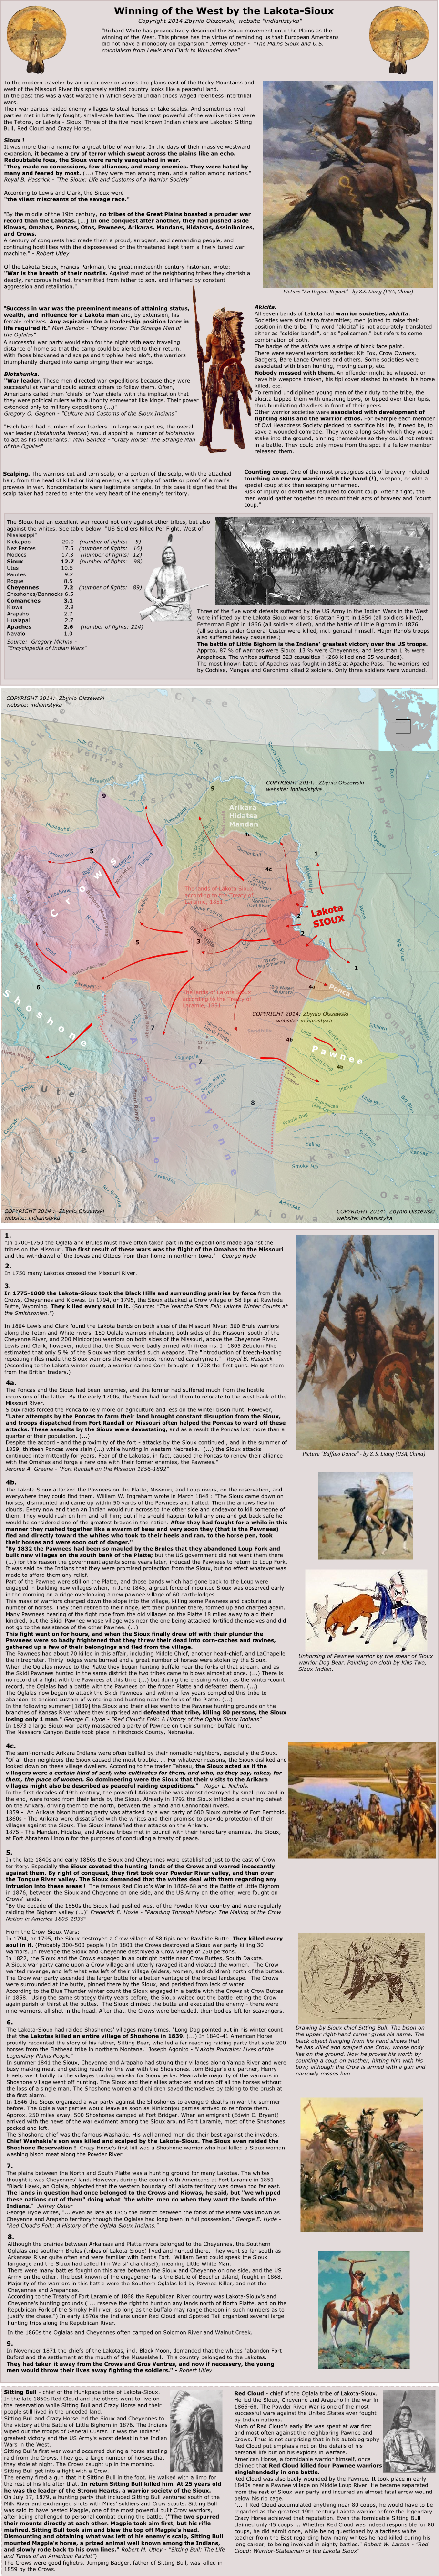 Mapa plemion i szczepow
indianskich w Ameryce.